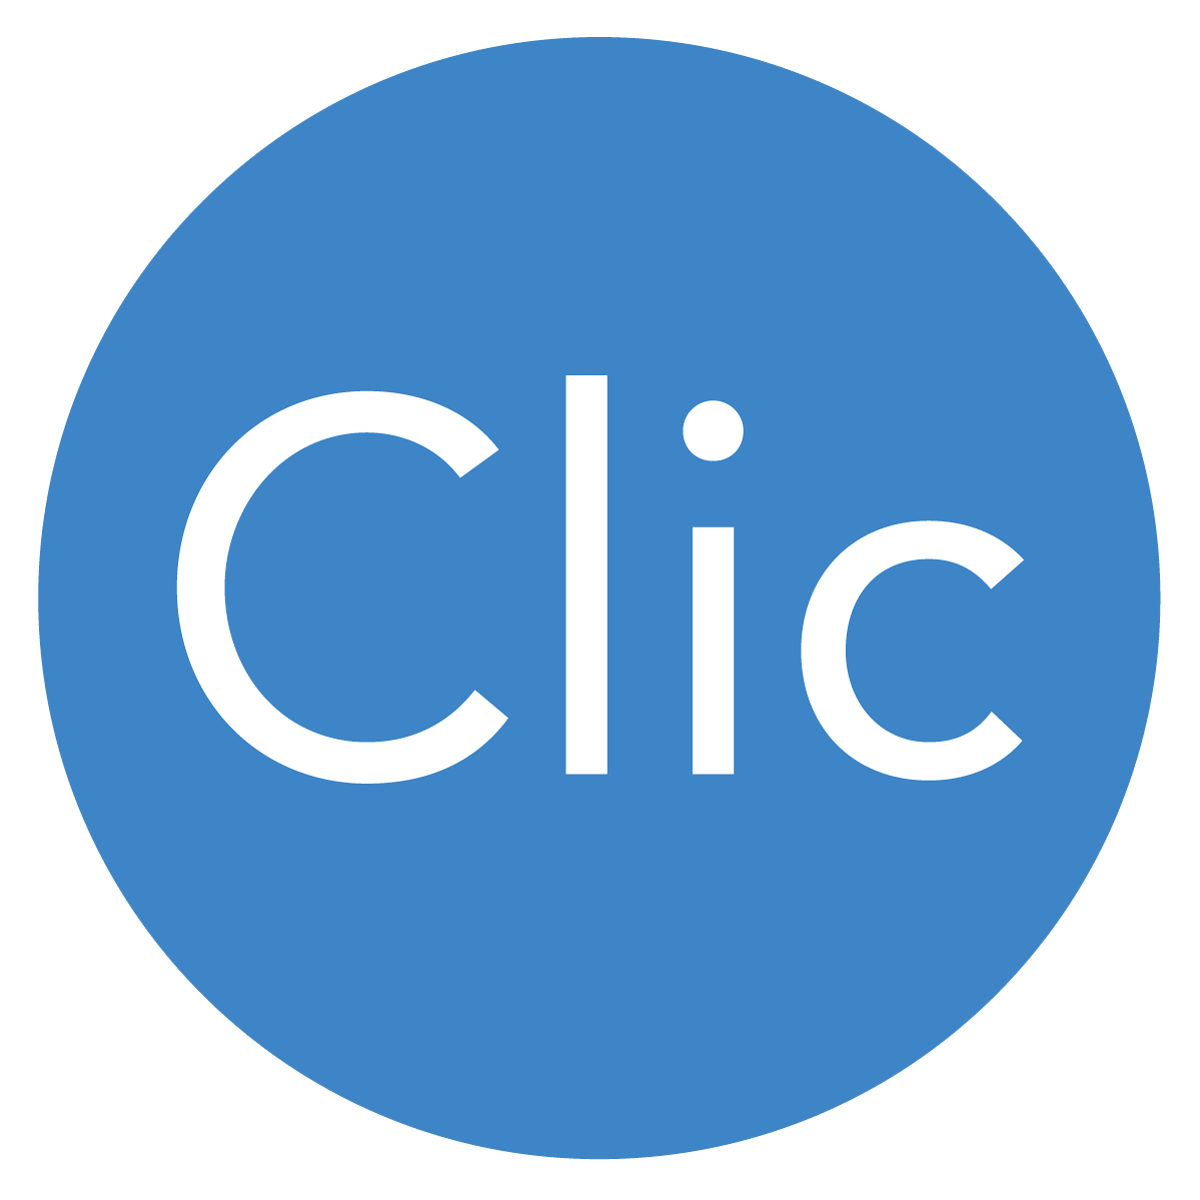 ClicFacture